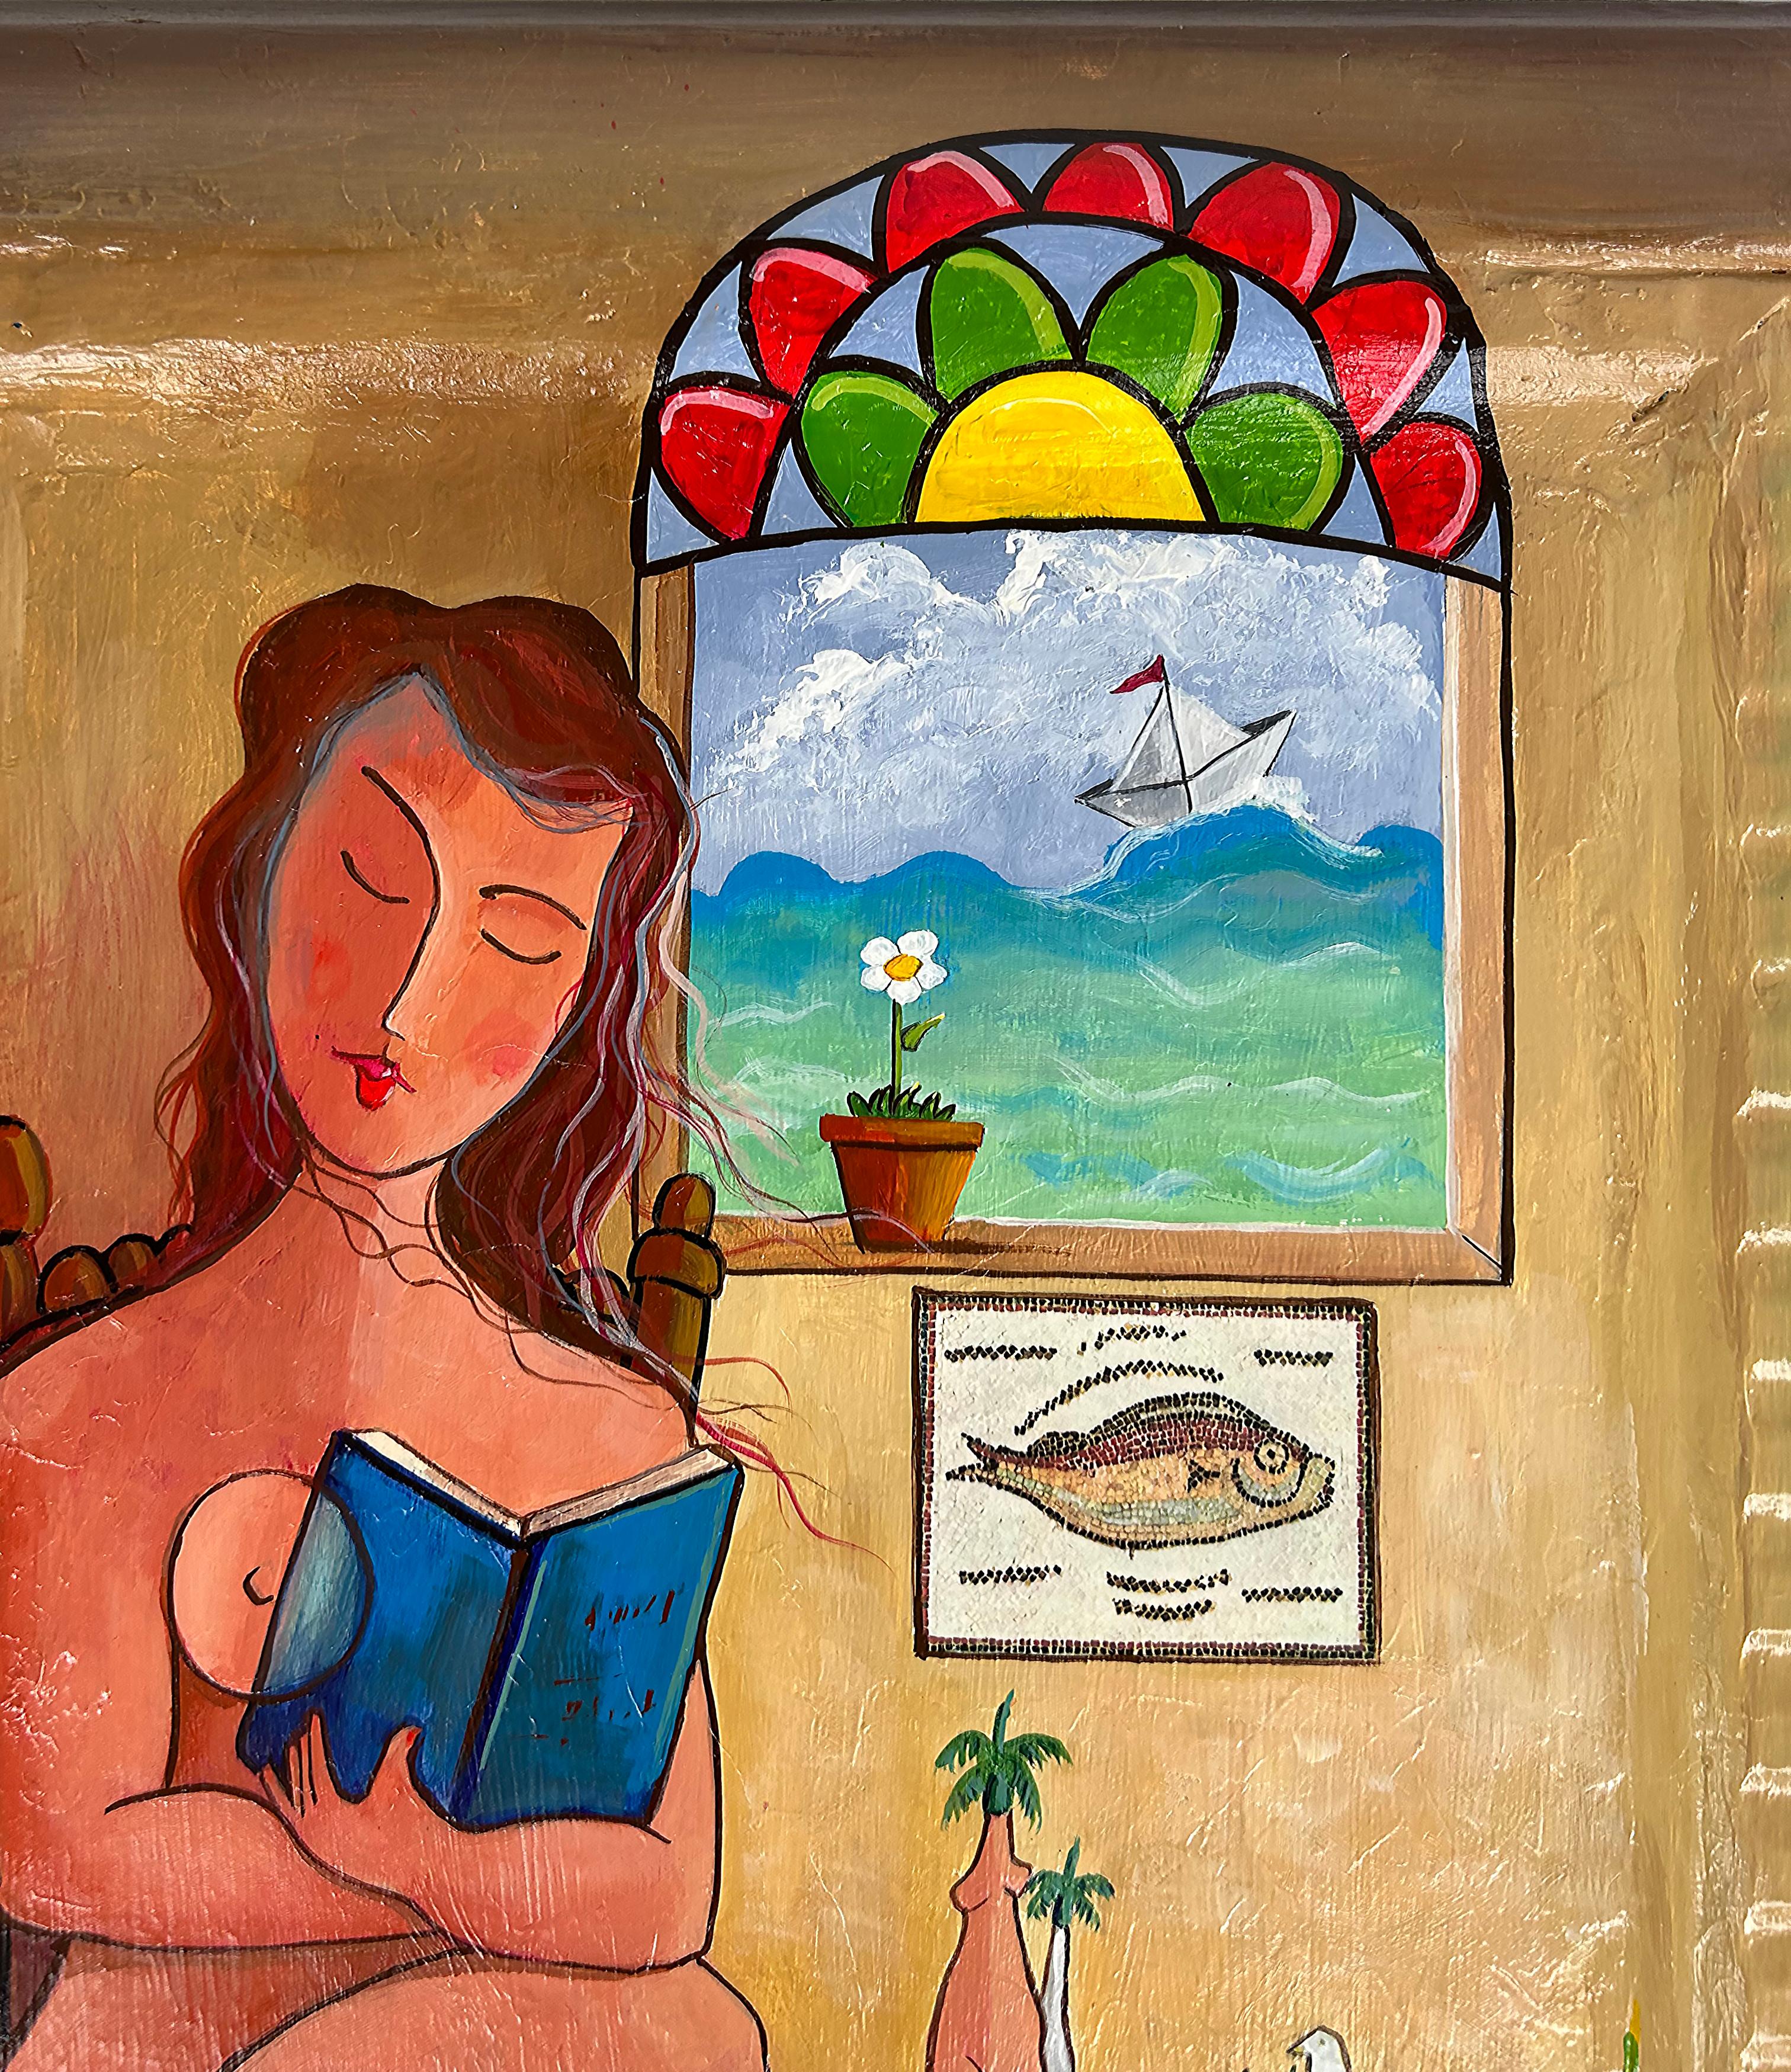 Juan Navarette - Peinture folklorique cubaine abstraite représentant une femme avec un poisson et un pigeon 

Nous proposons à la vente une peinture folklorique cubaine représentant une femme assise lisant une boîte à côté d'une fenêtre avec un